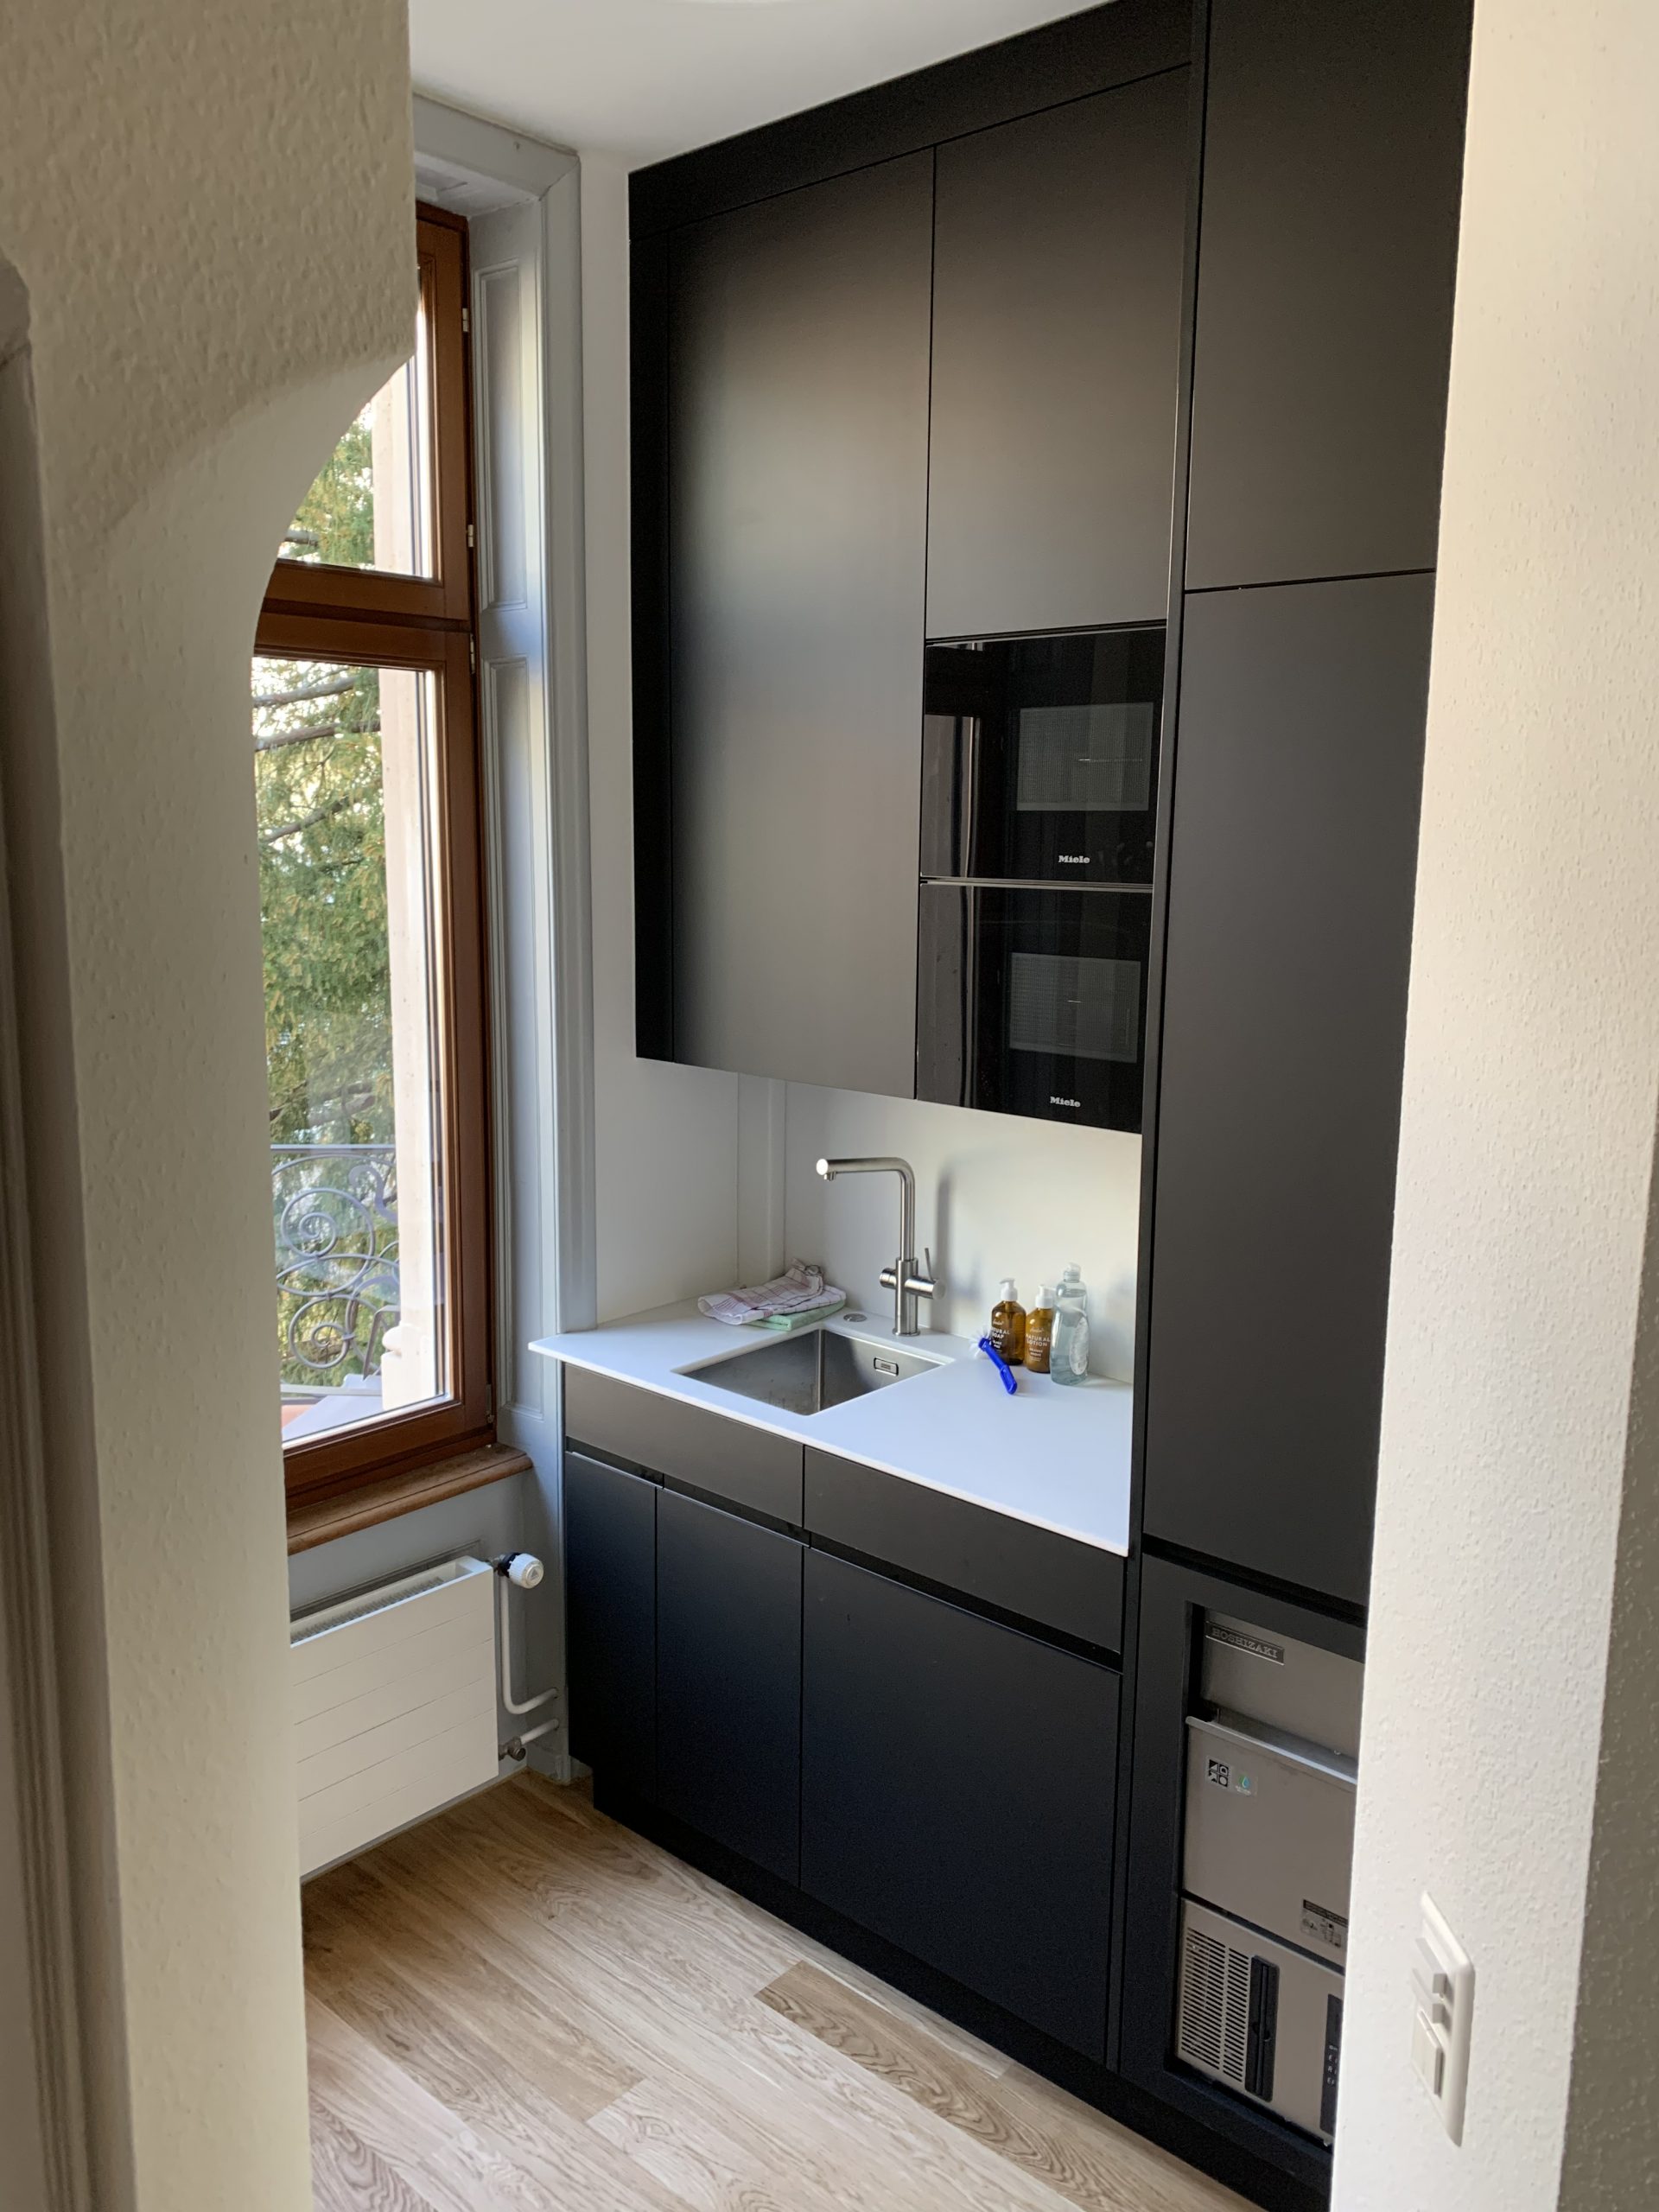 Einzelansicht Küche eines unserer neuesten Architekturprojekte in Basel für eine Anwaltskanzlei, umgesetzt von Bloom Studio.